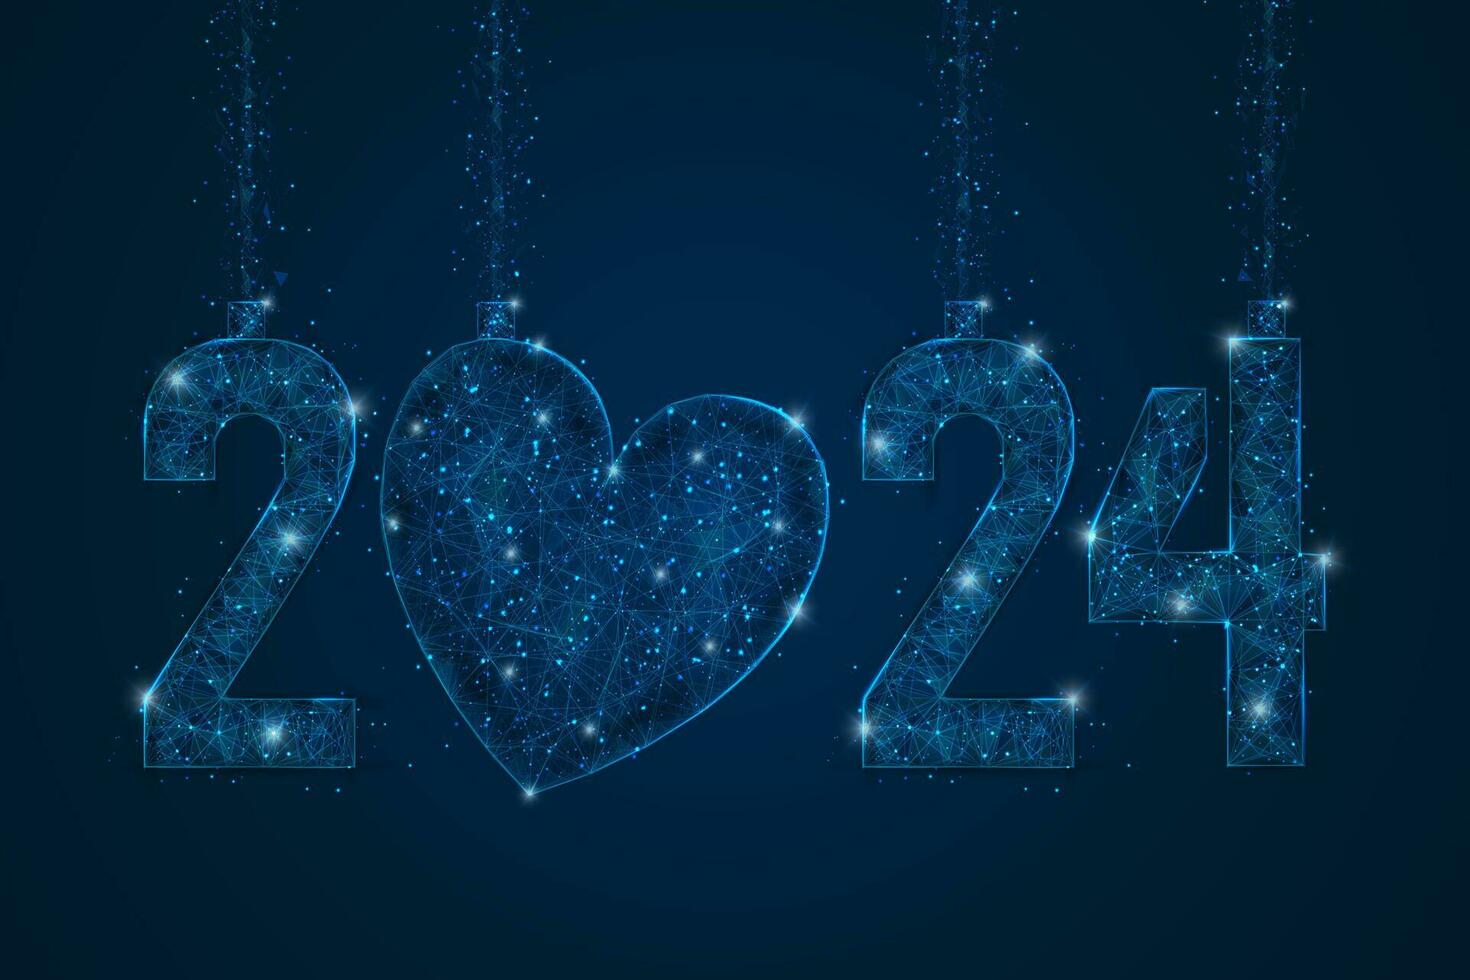 abstrakt isoliert Blau Bild von Neu Jahr Nummer 2024. polygonal niedrig poly Drahtmodell Illustration sieht aus mögen Sterne im das hell Nacht Himmel im Spase oder fliegend Glas Scherben. Digital Netz, Internet Design. vektor